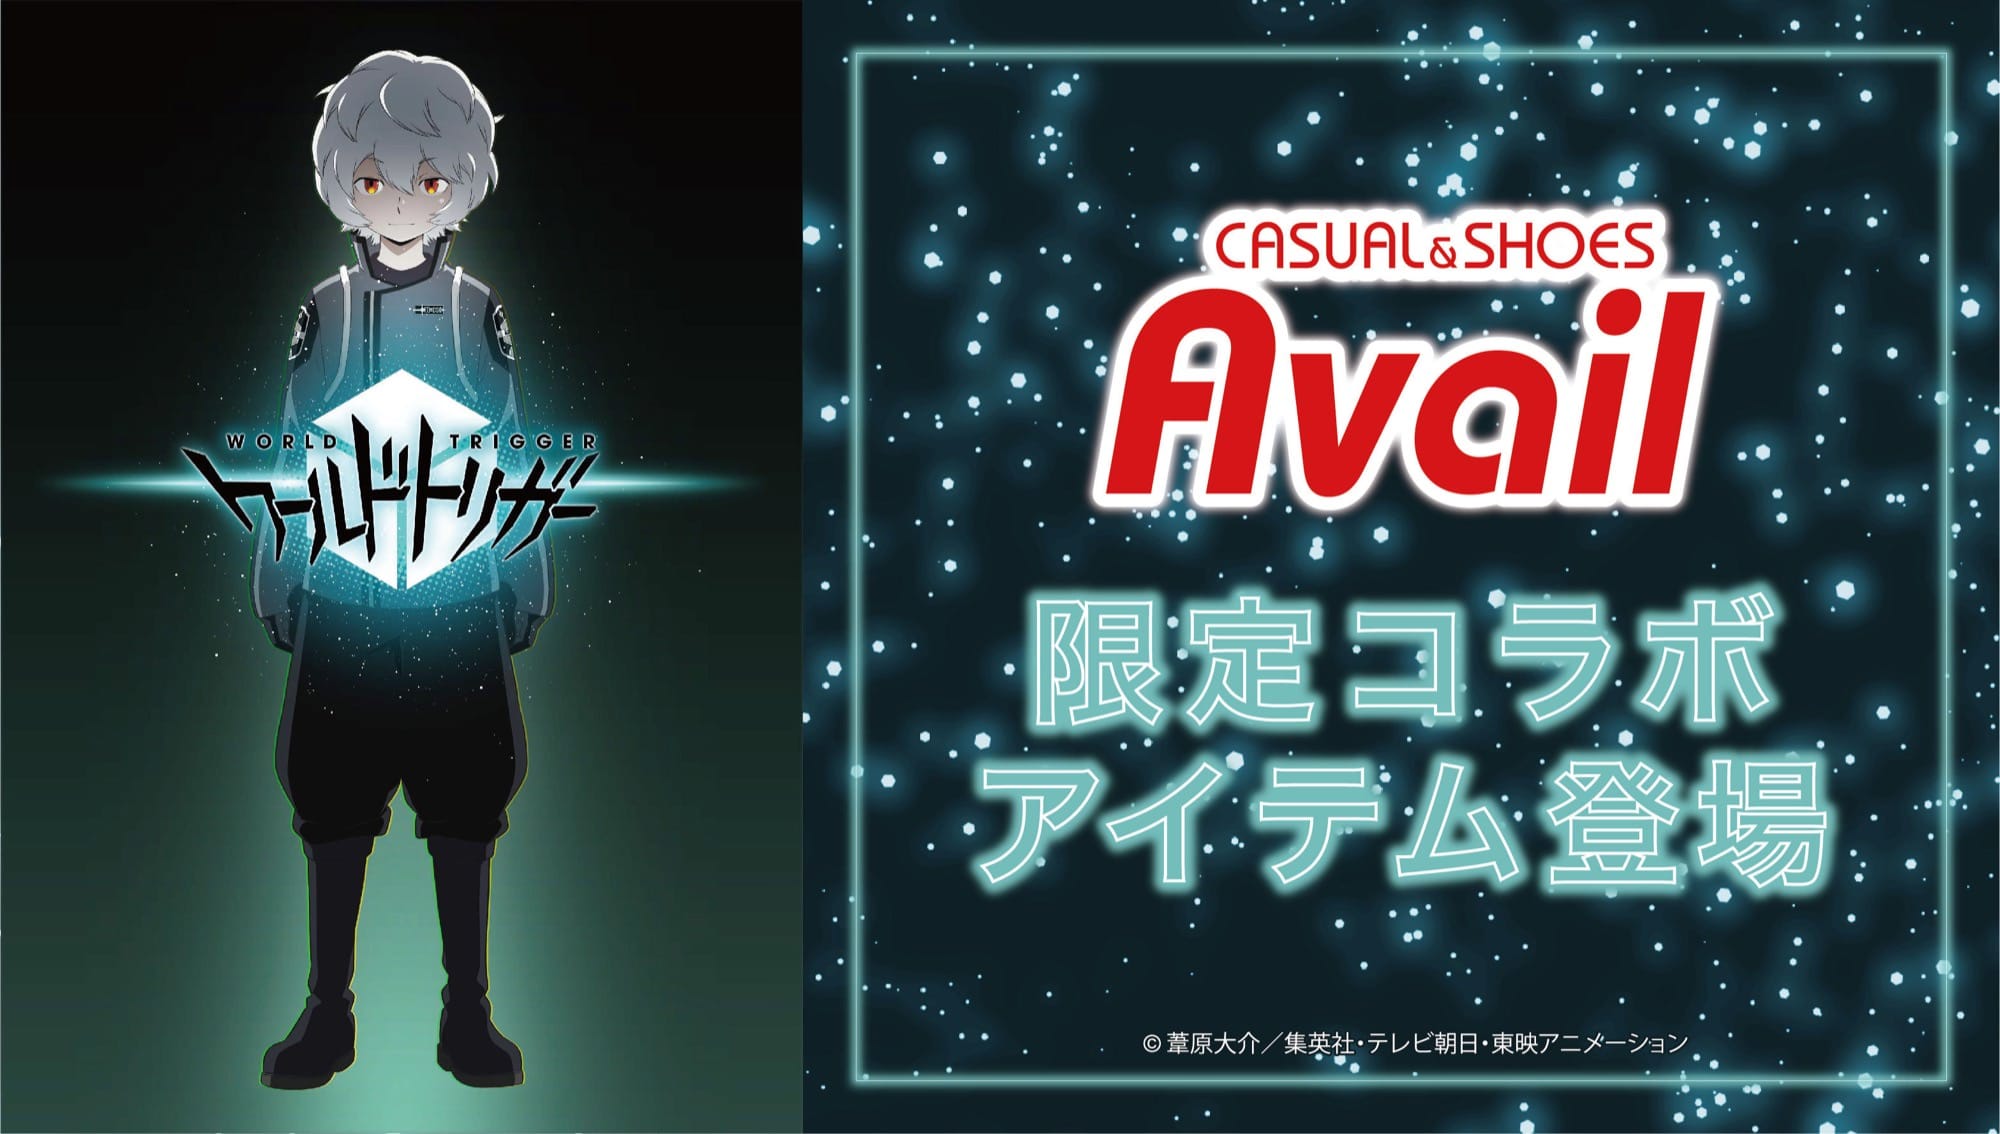 ワールドトリガー × Avail (アベイル) 5月29日よりコラボグッズ発売!!